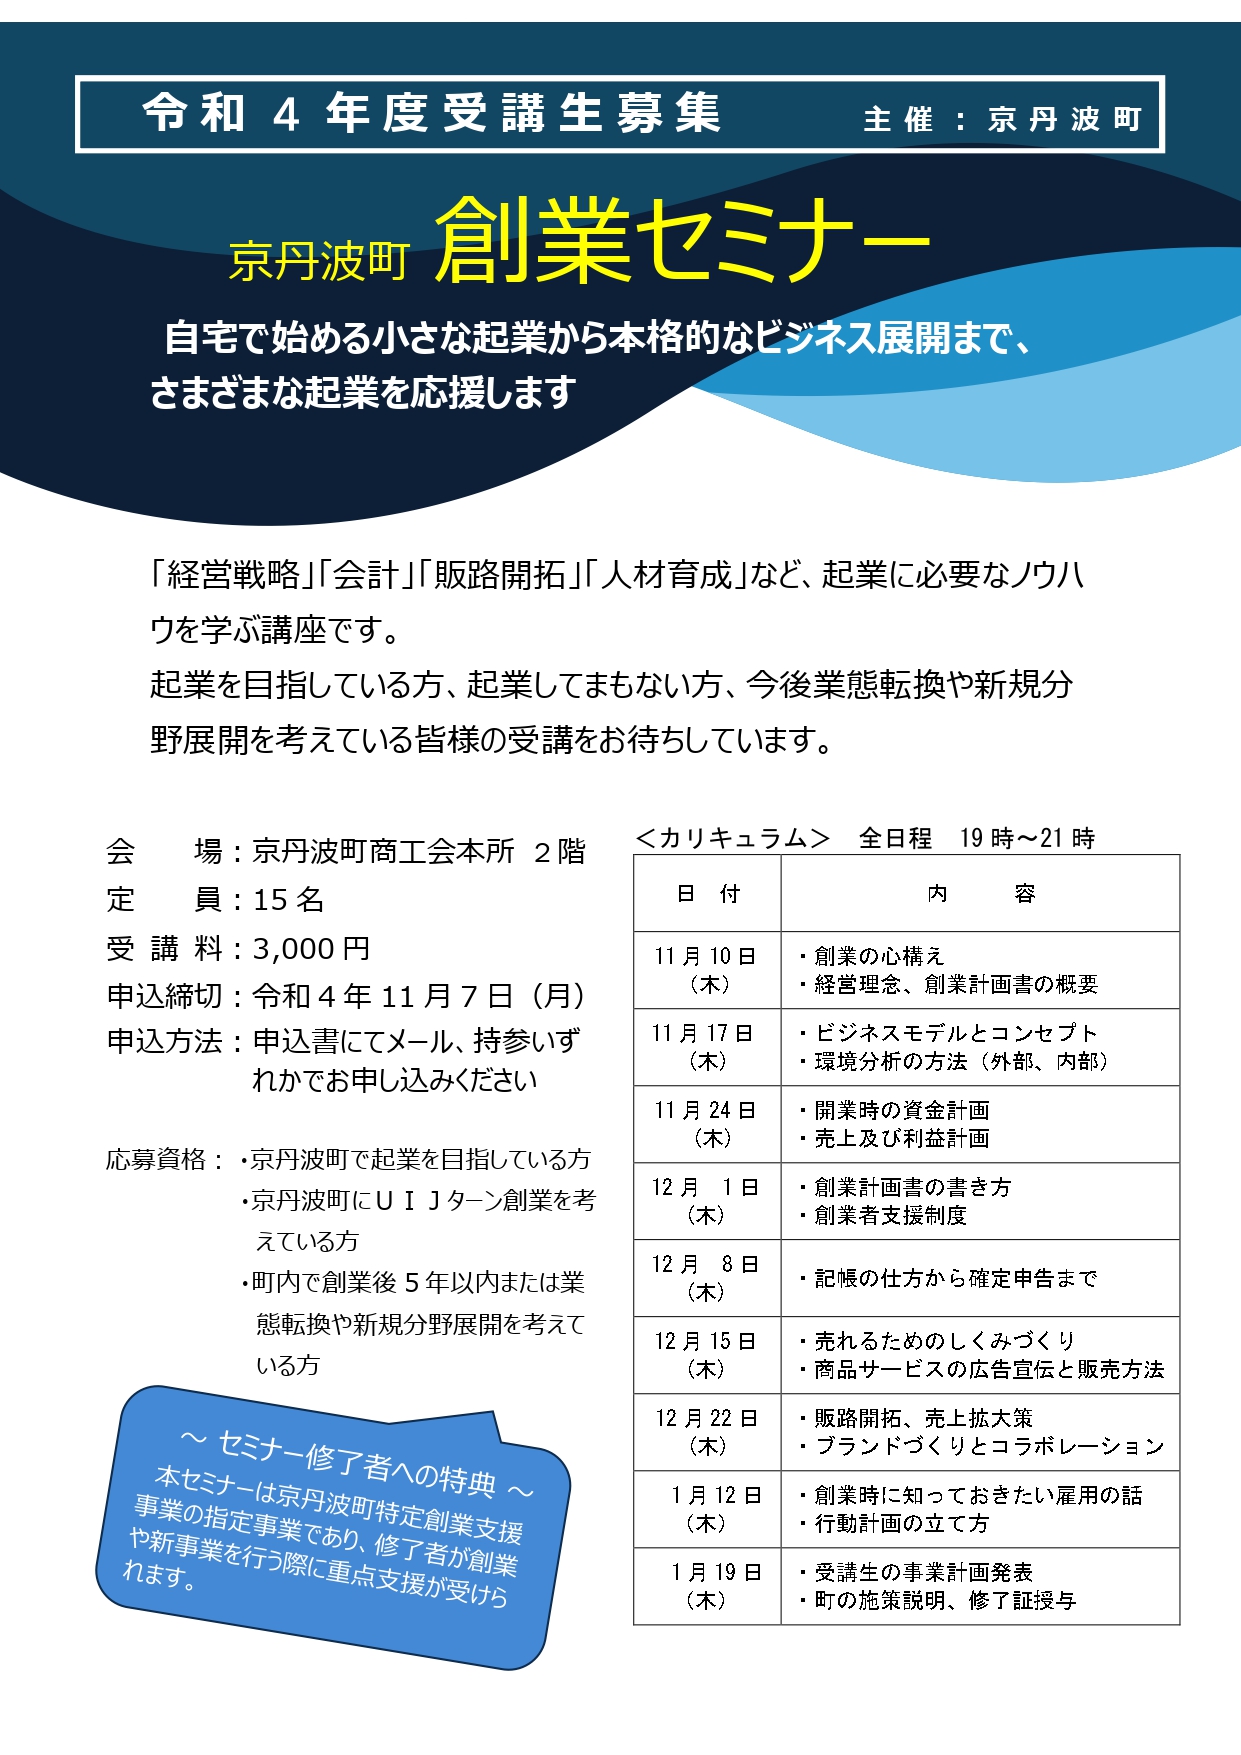 【講習会・セミナー】令和4年度 京丹波町創業セミナー参加者募集について